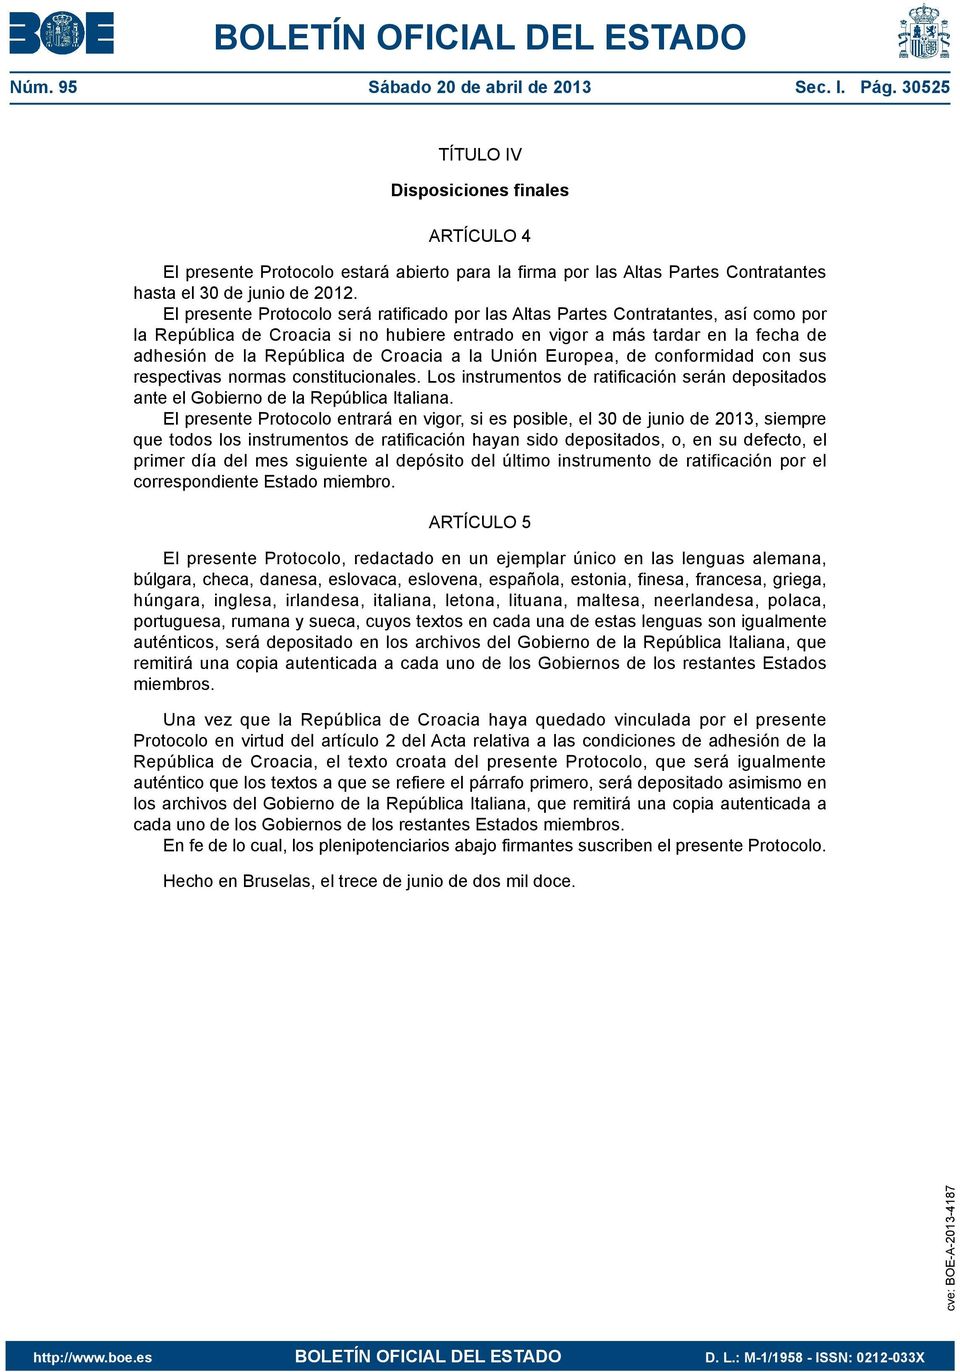 El presente Protocolo será ratificado por las Altas Partes Contratantes, así como por la República de Croacia si no hubiere entrado en vigor a más tardar en la fecha de adhesión de la República de